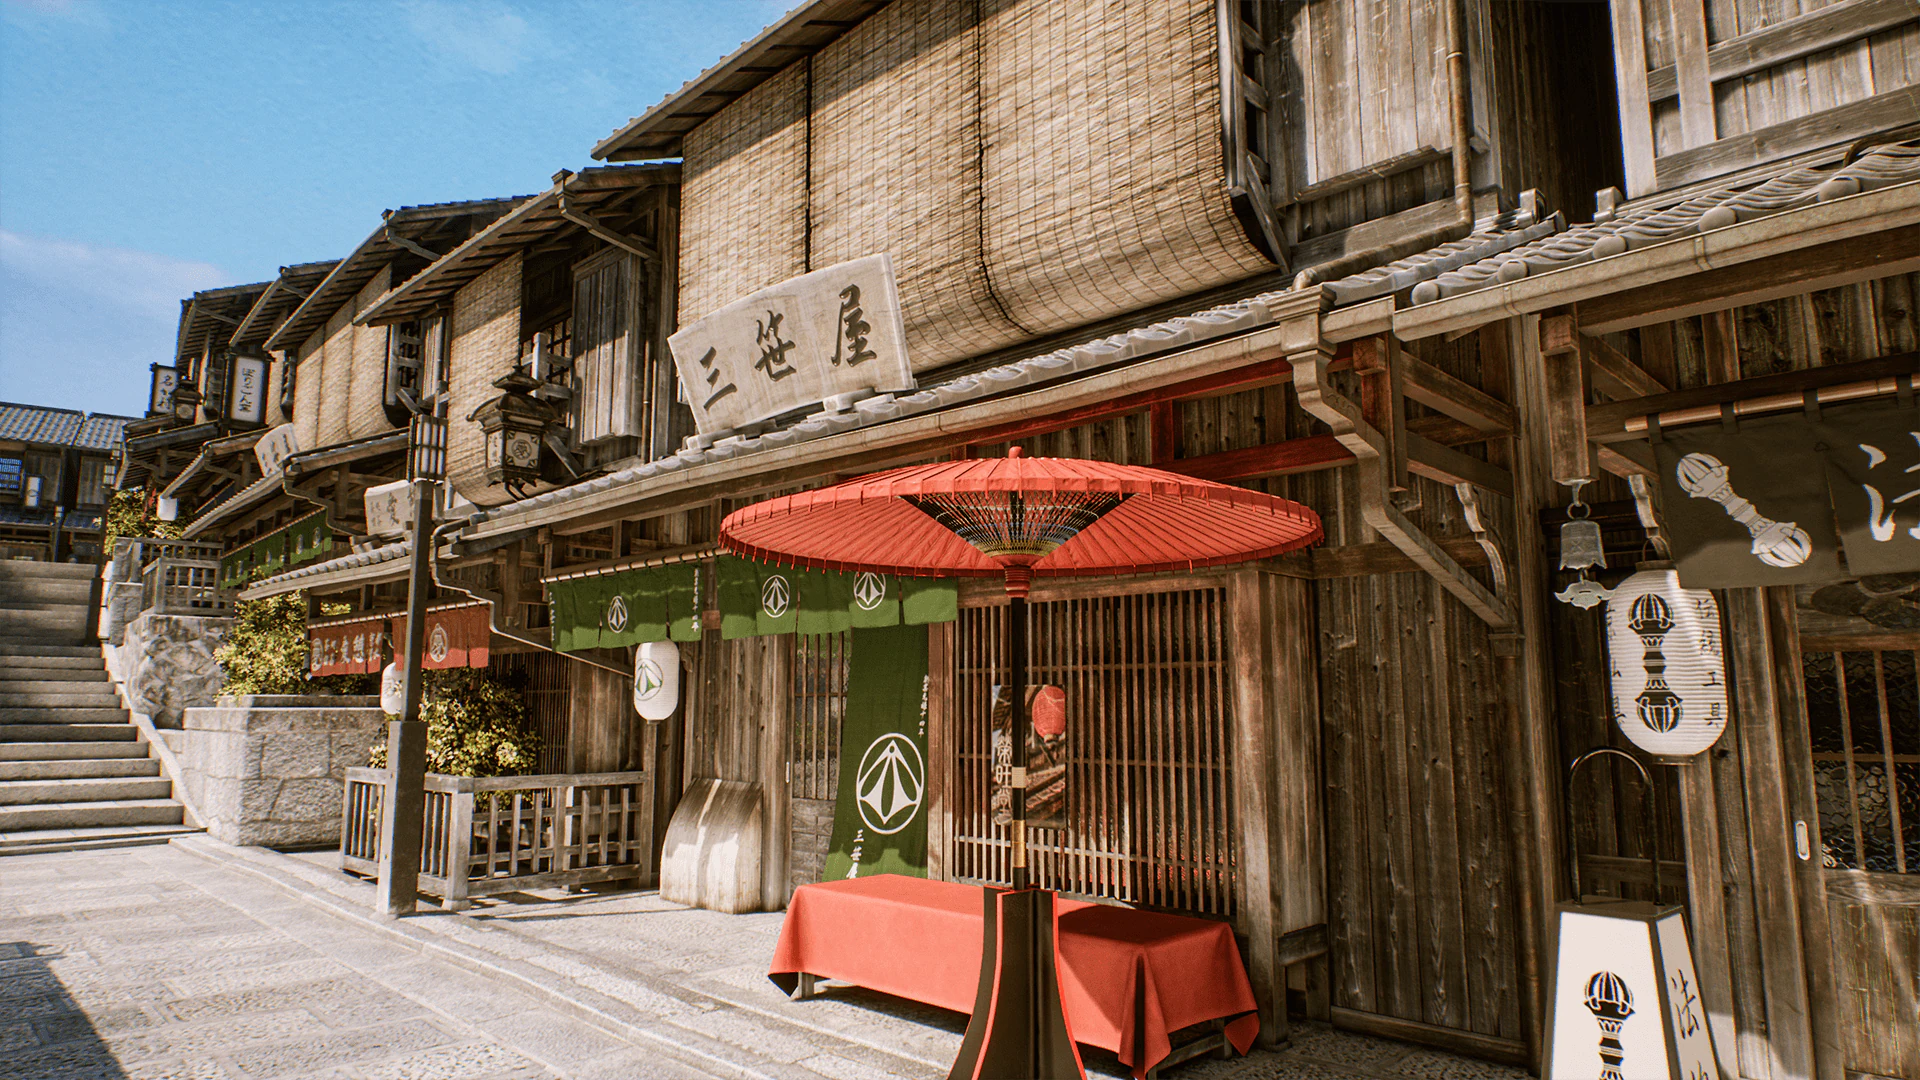 دانلود پروژه Kyoto Alley برای آنریل انجین